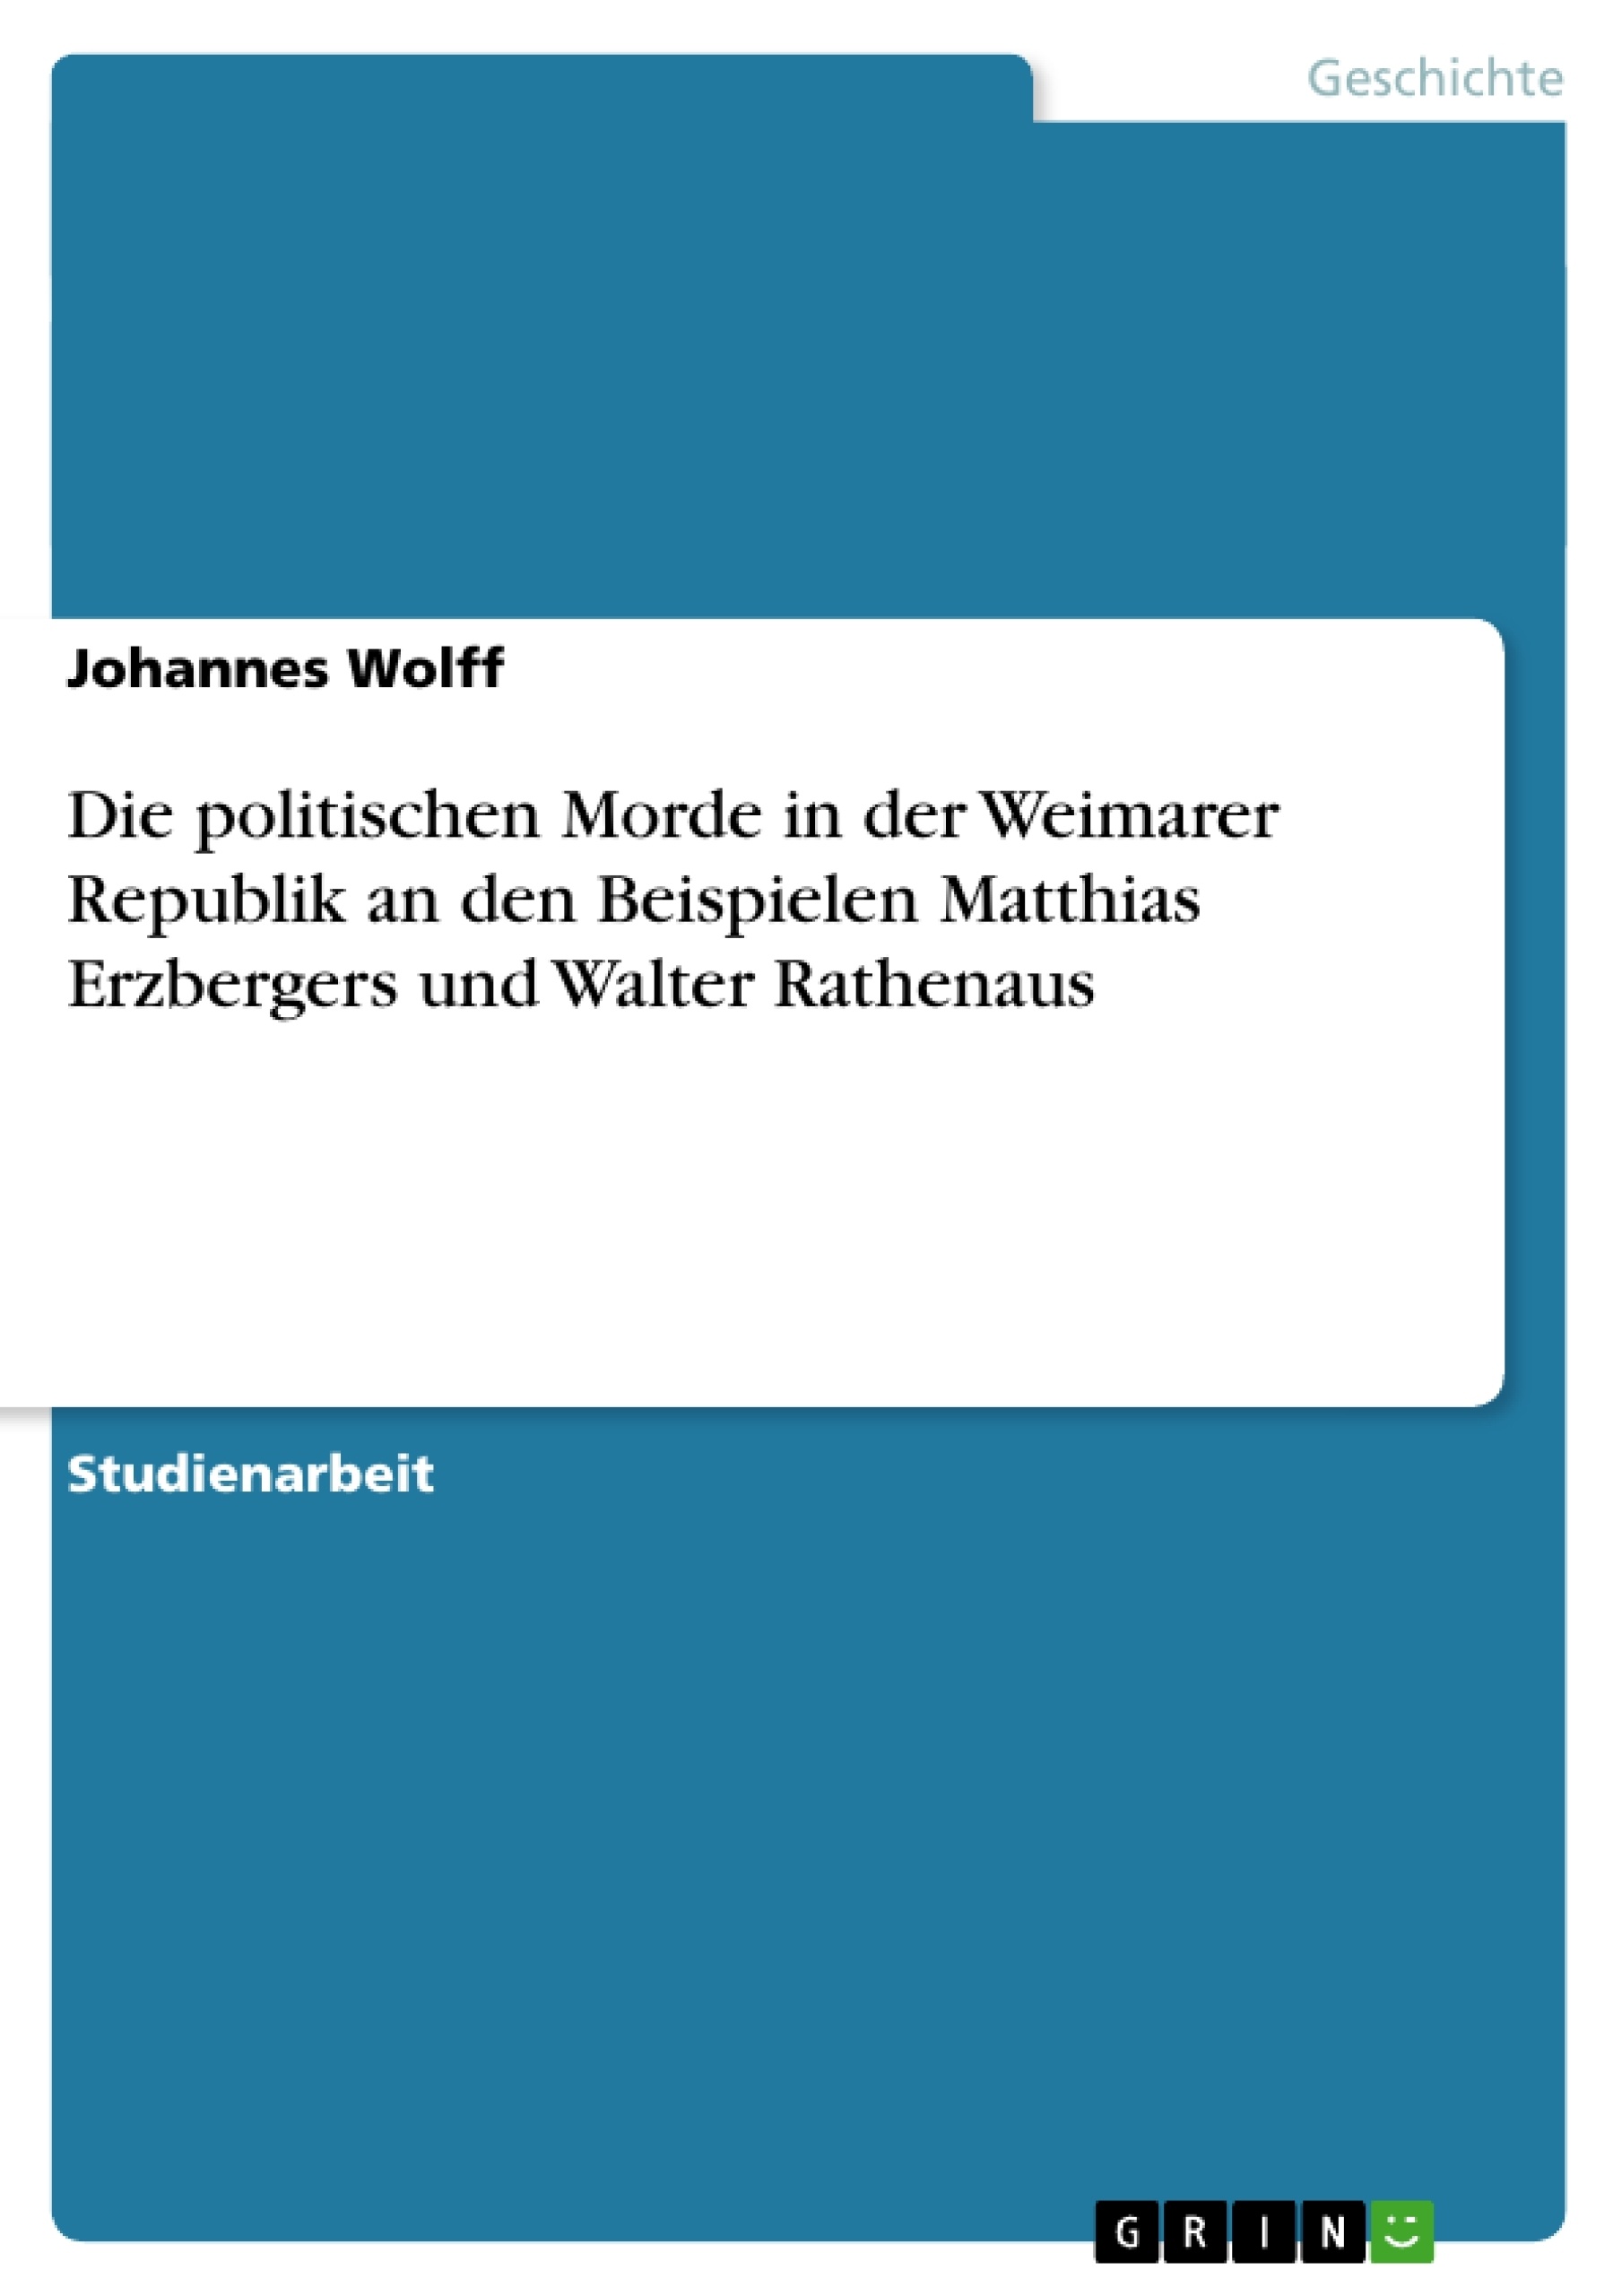 Título: Die politischen Morde in der Weimarer Republik an den Beispielen Matthias Erzbergers und Walter Rathenaus